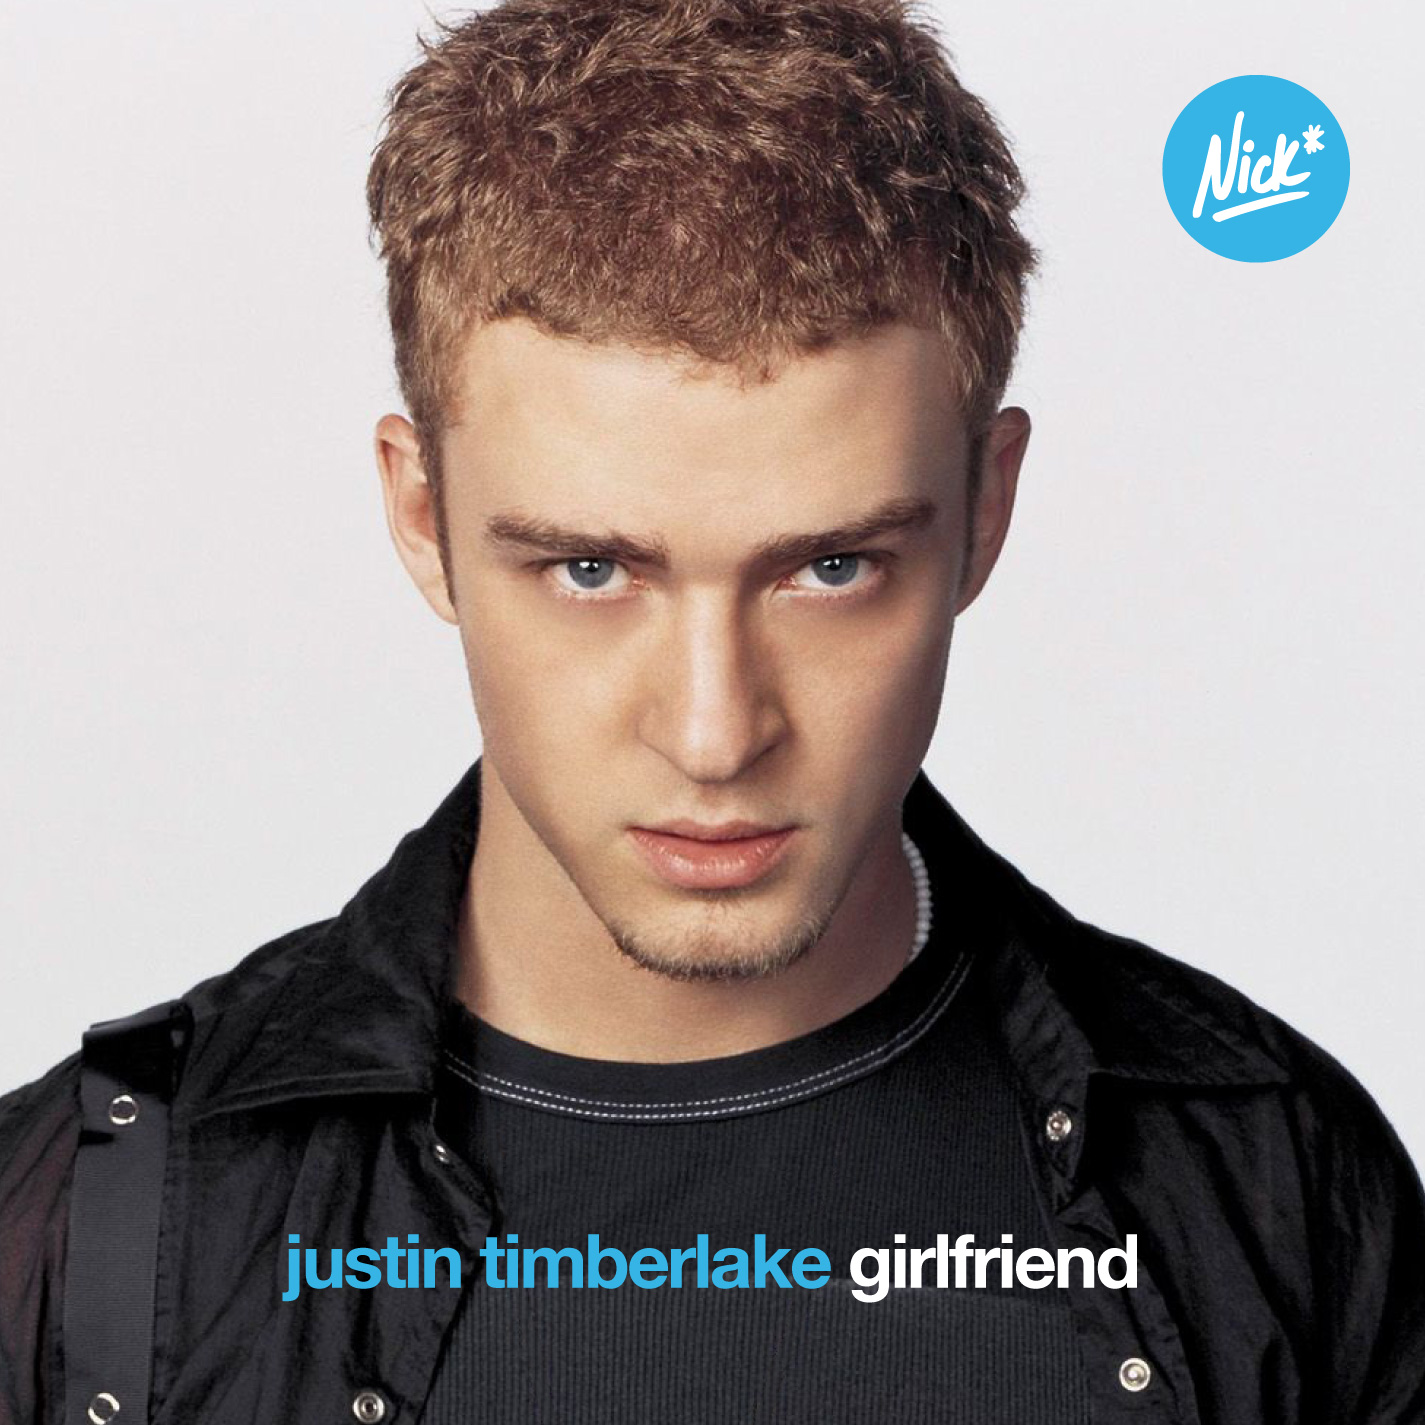 Justin Timberlake - Girlfriend Nick* Original Mix